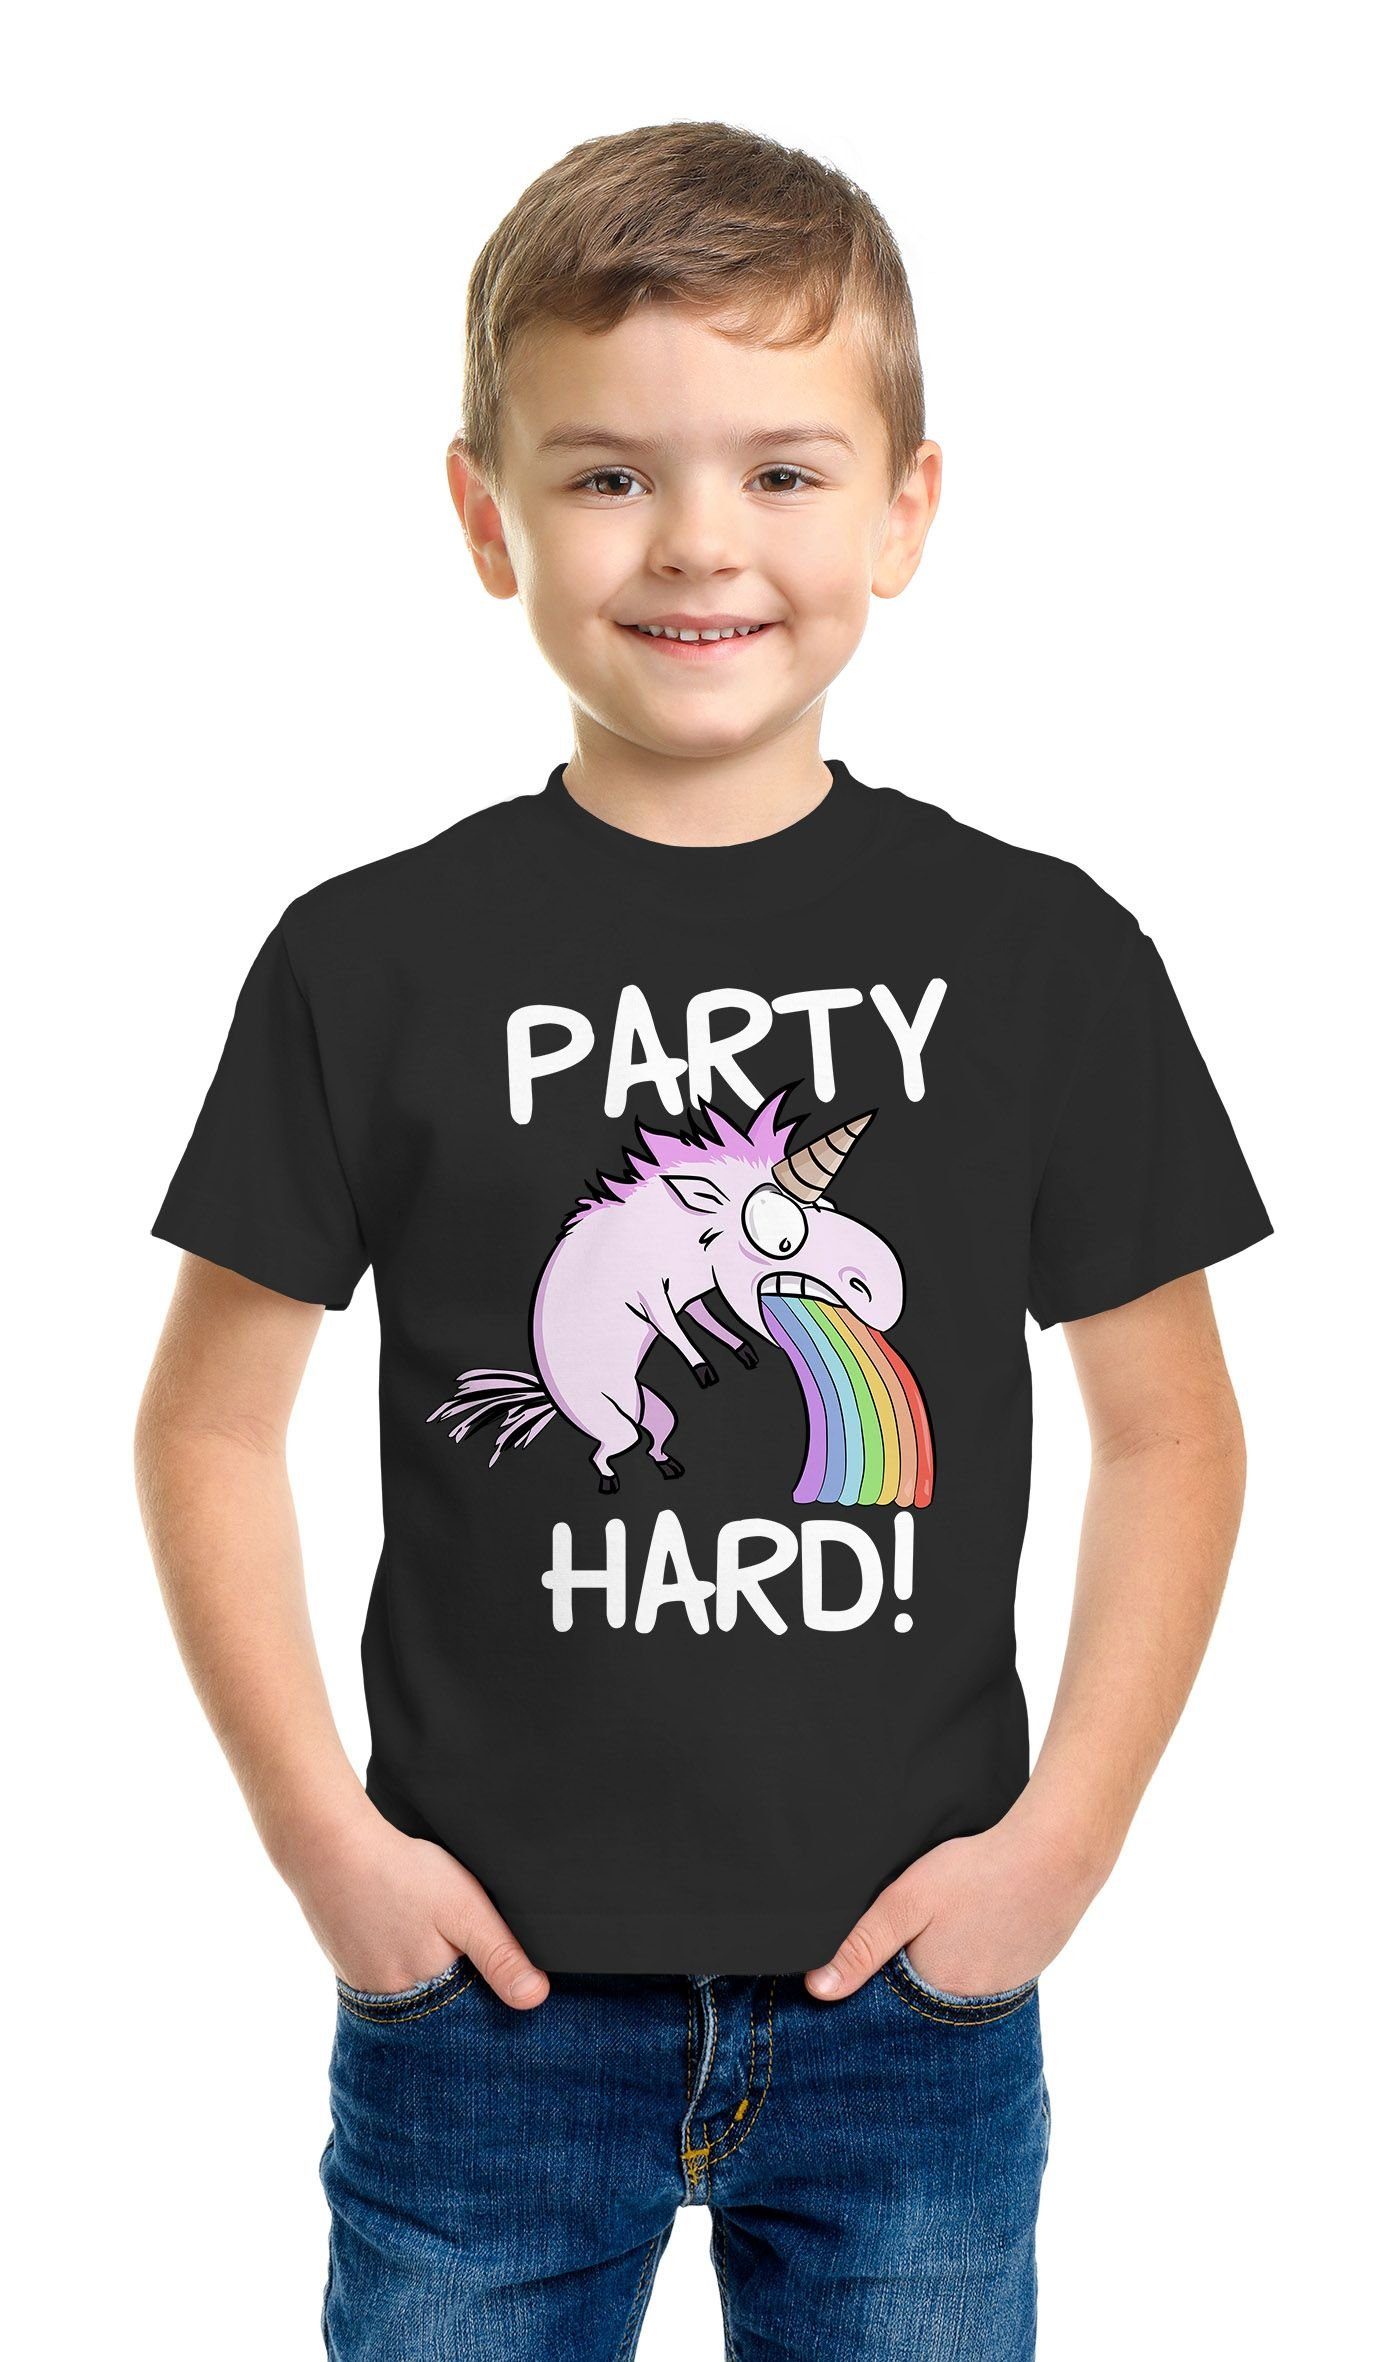 Hard Jungen Jungen MoonWorks Moonworks® kotzendes Print-Shirt für Regenbogen Party T-Shirt Kinder Einhorn Geschenk lustig